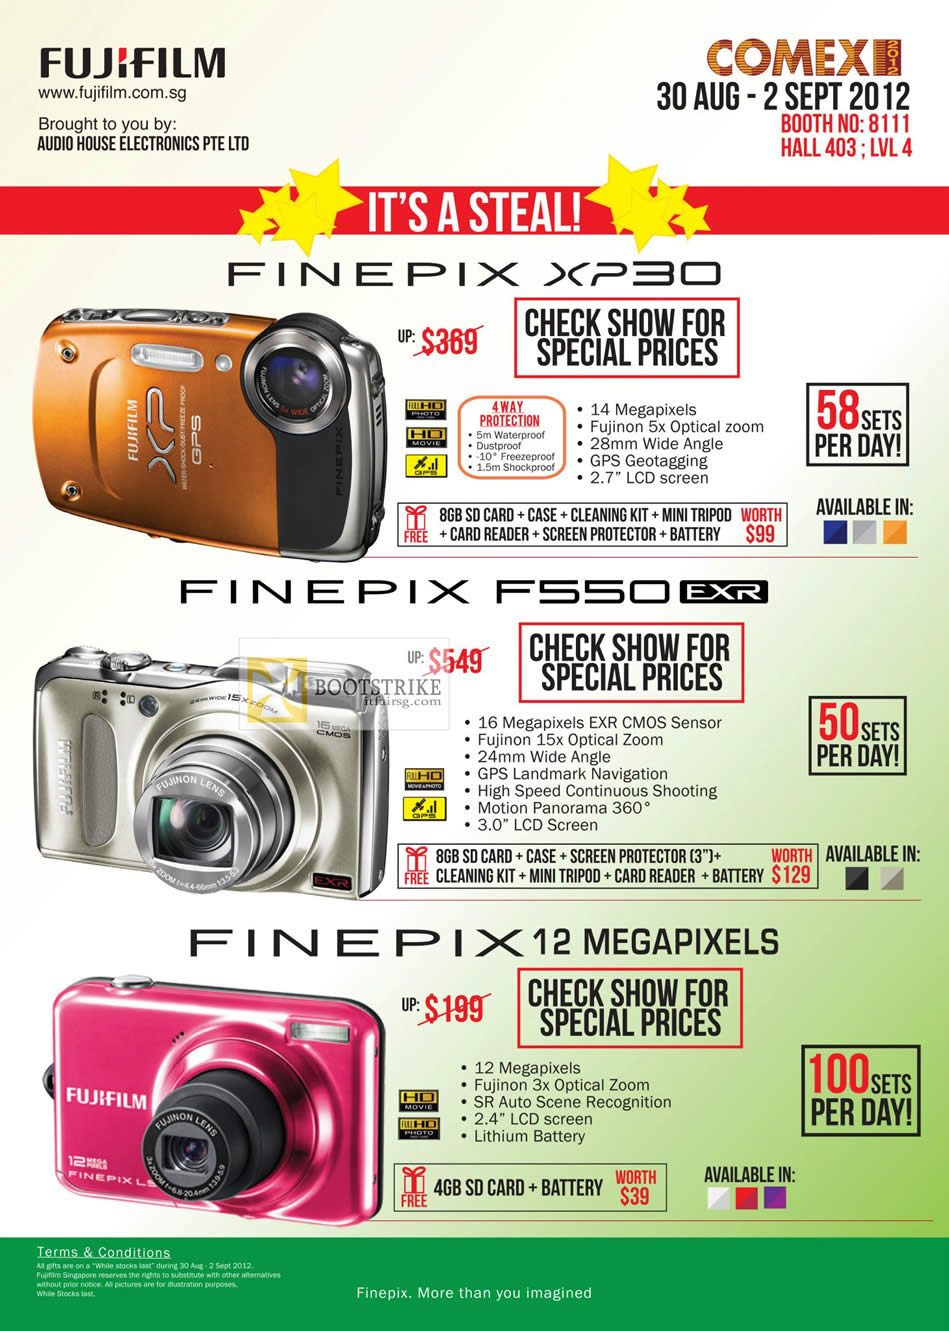 Fujifilm Digital Cameras Finepix XP30, F550, 12 Megapixels COMEX 2012